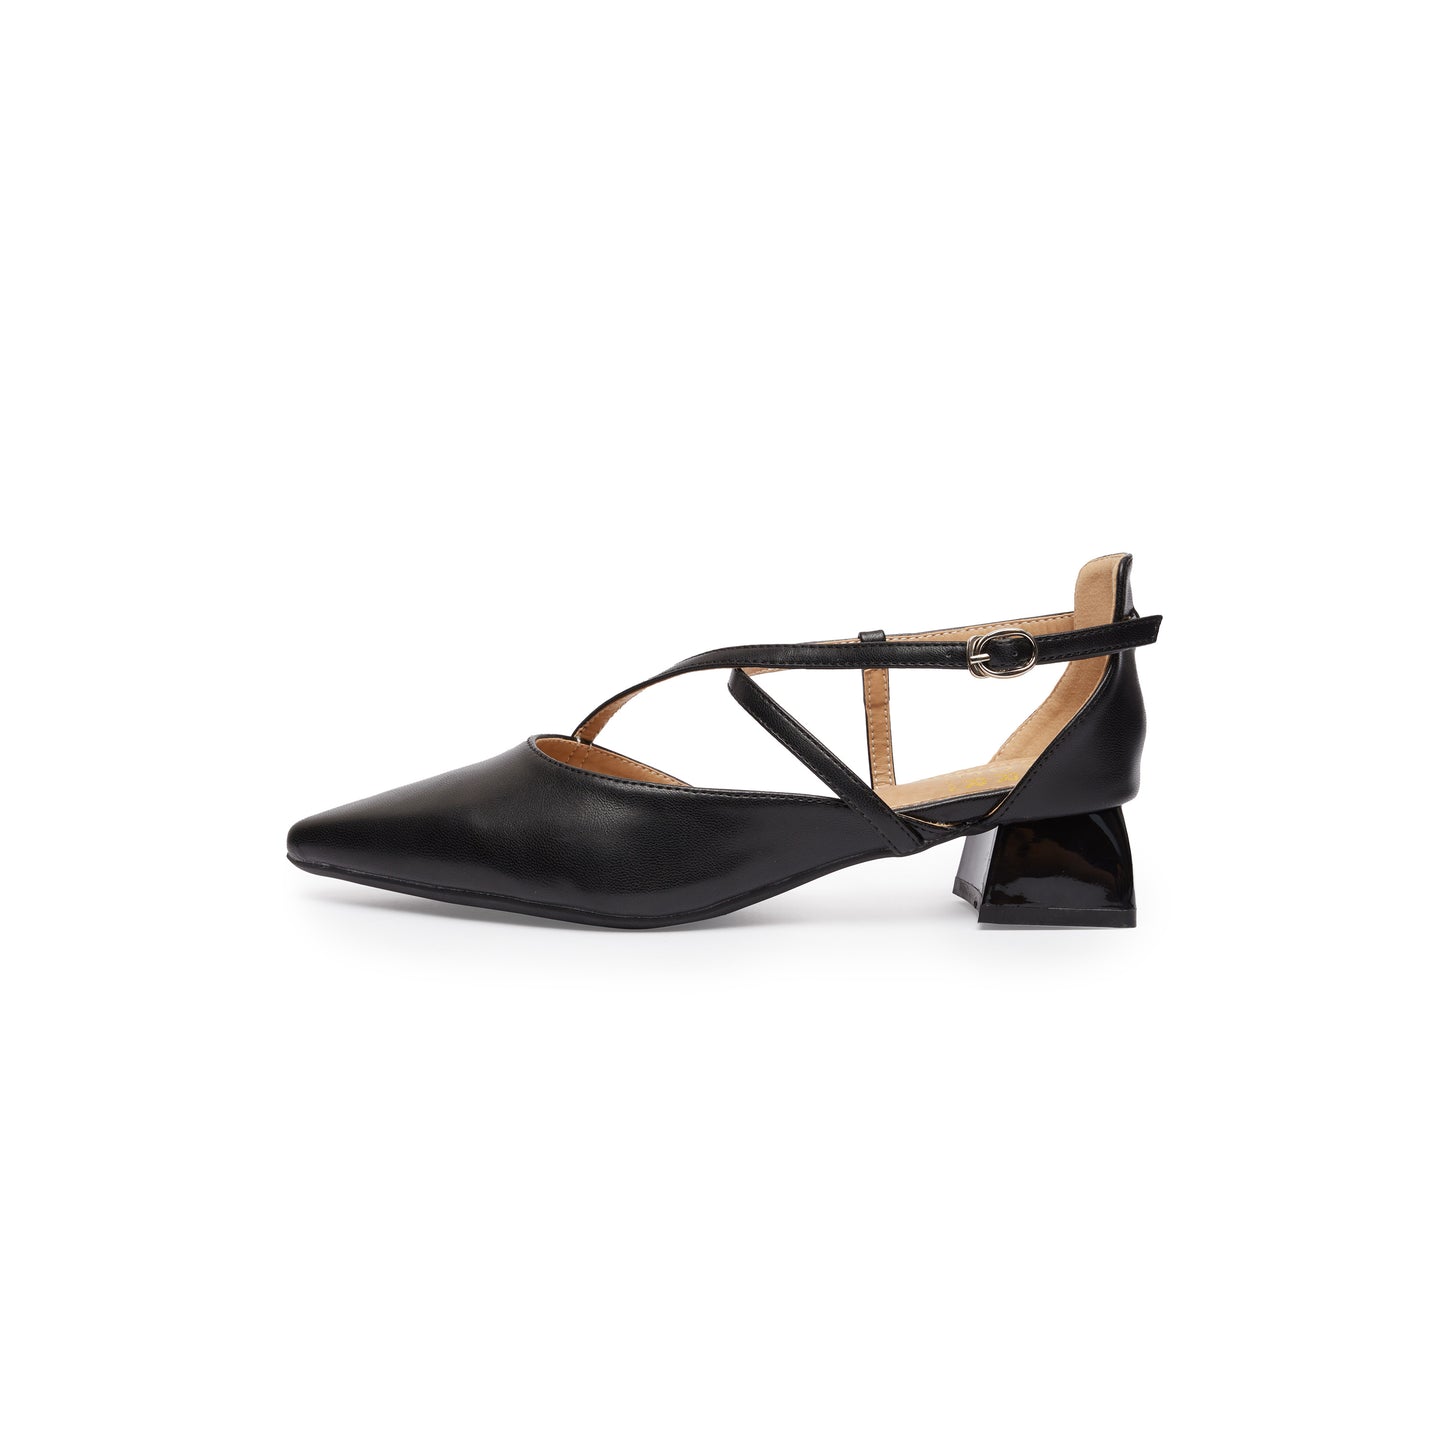 Kedi Heels Sandals - Black ( BLK )